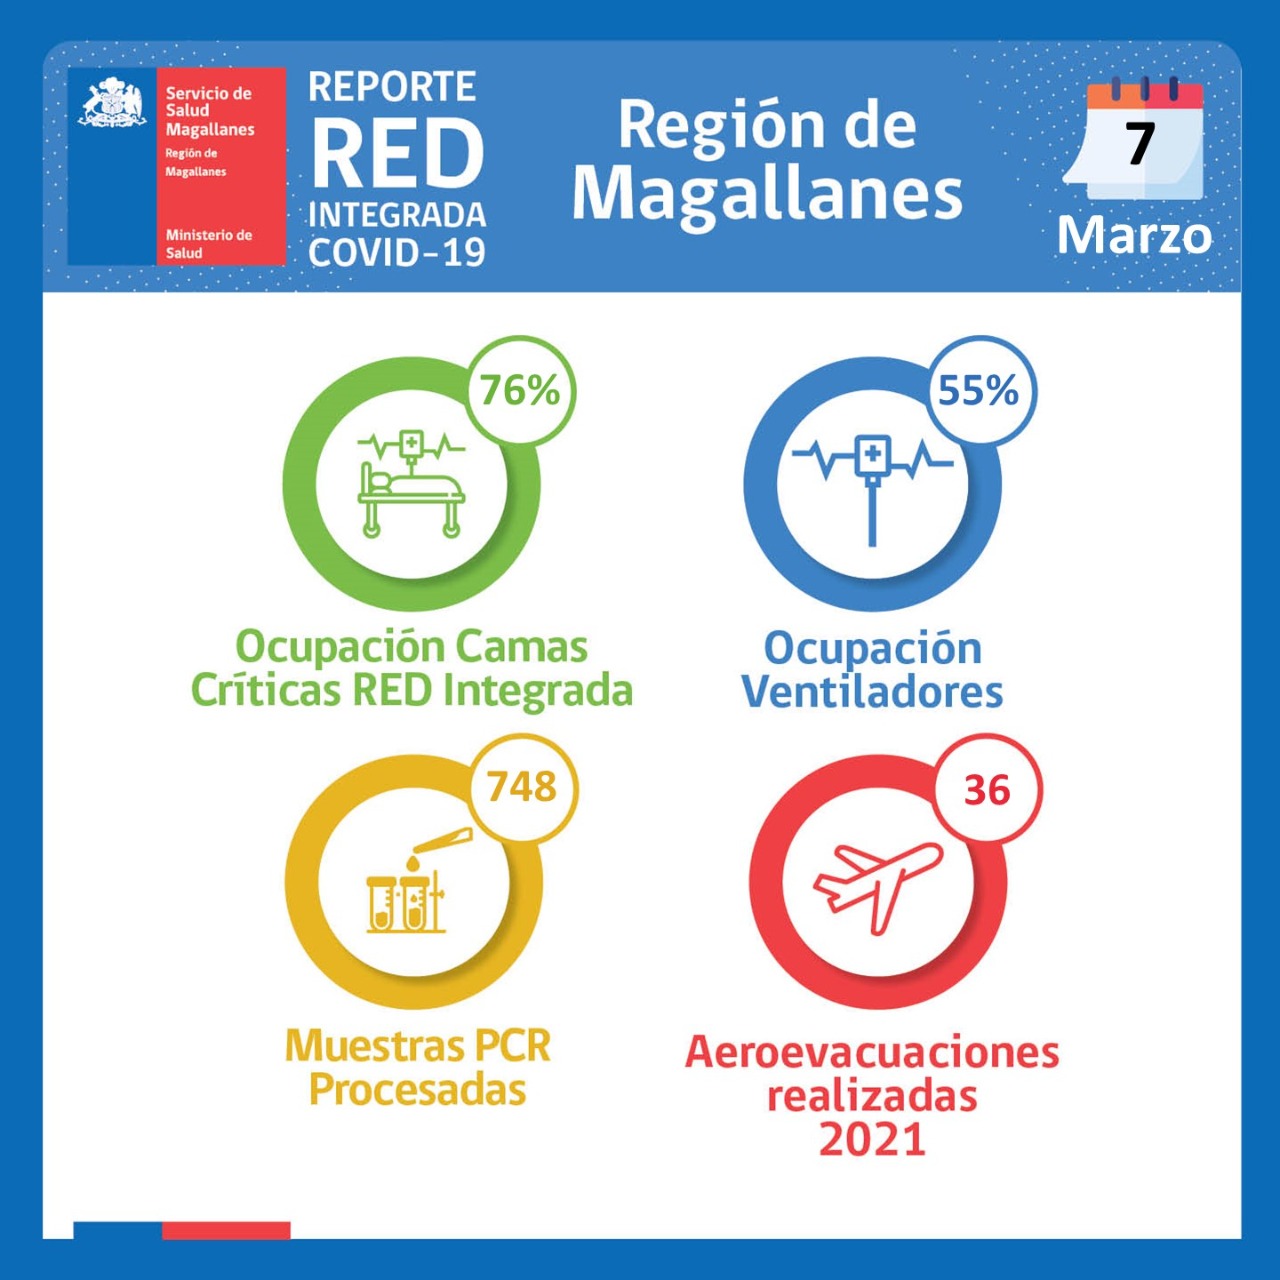 Estado de la Red Integrada Covid-19 en Magallanes al día domingo 7 de marzo